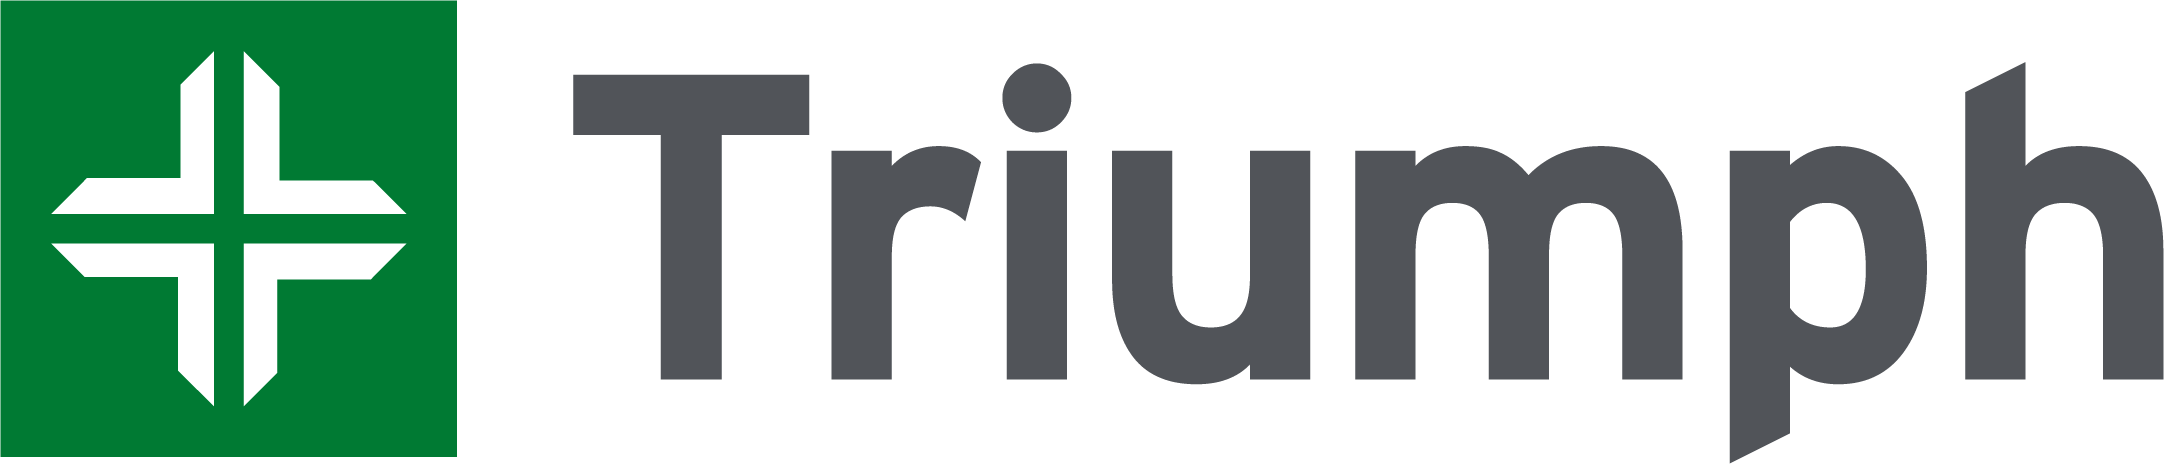 Triumph-logo-updated